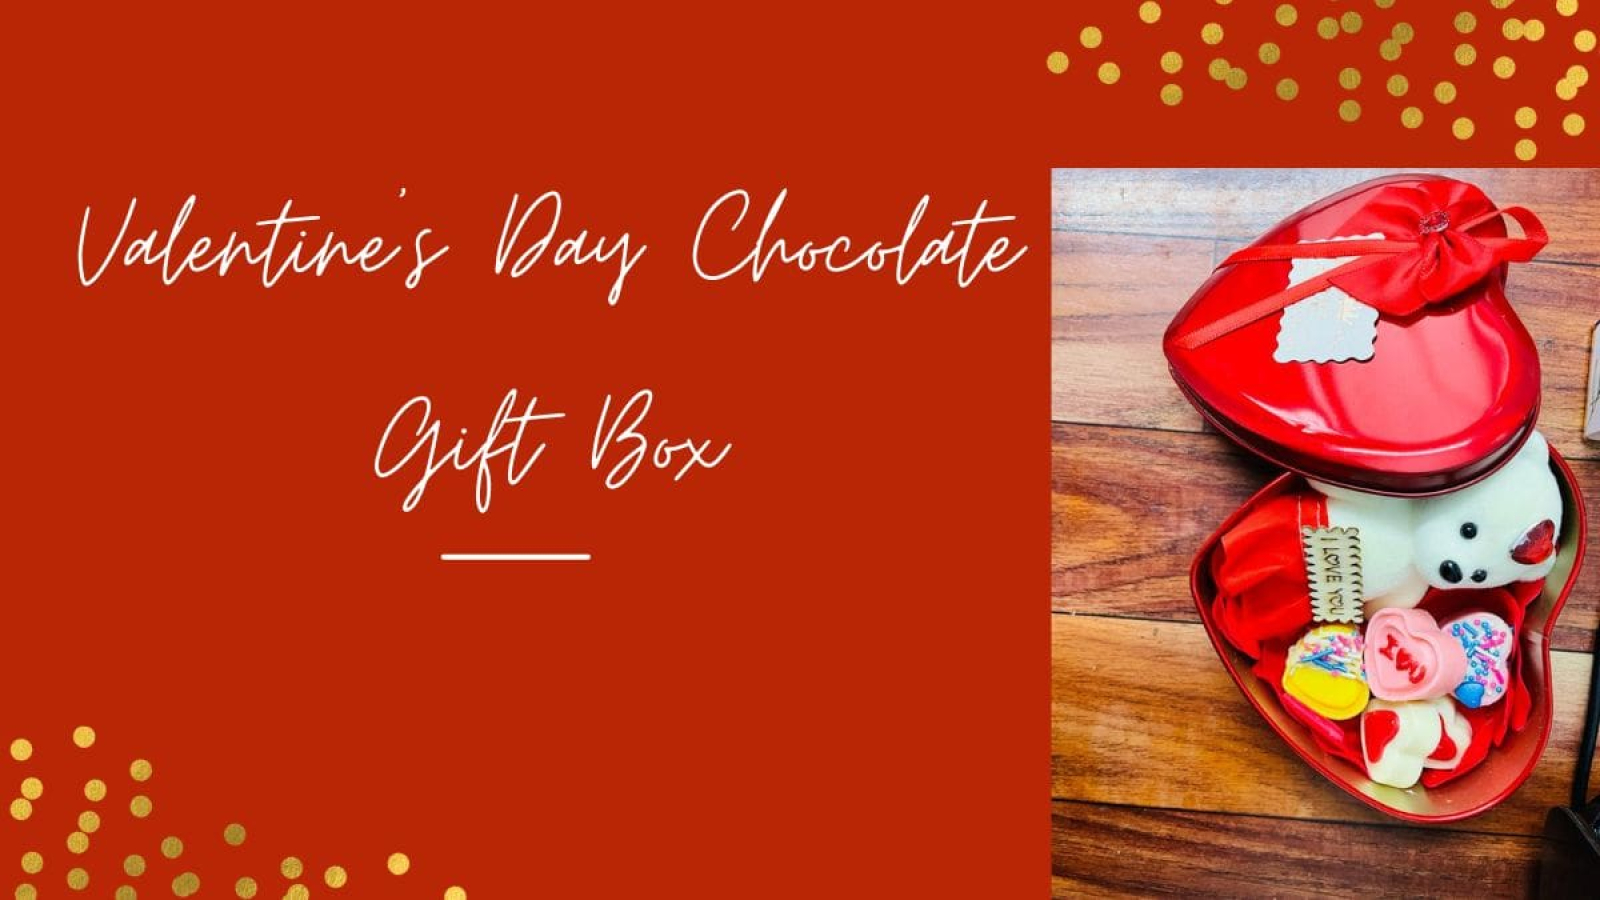 Valentine’s Day Chocolate Gift Box